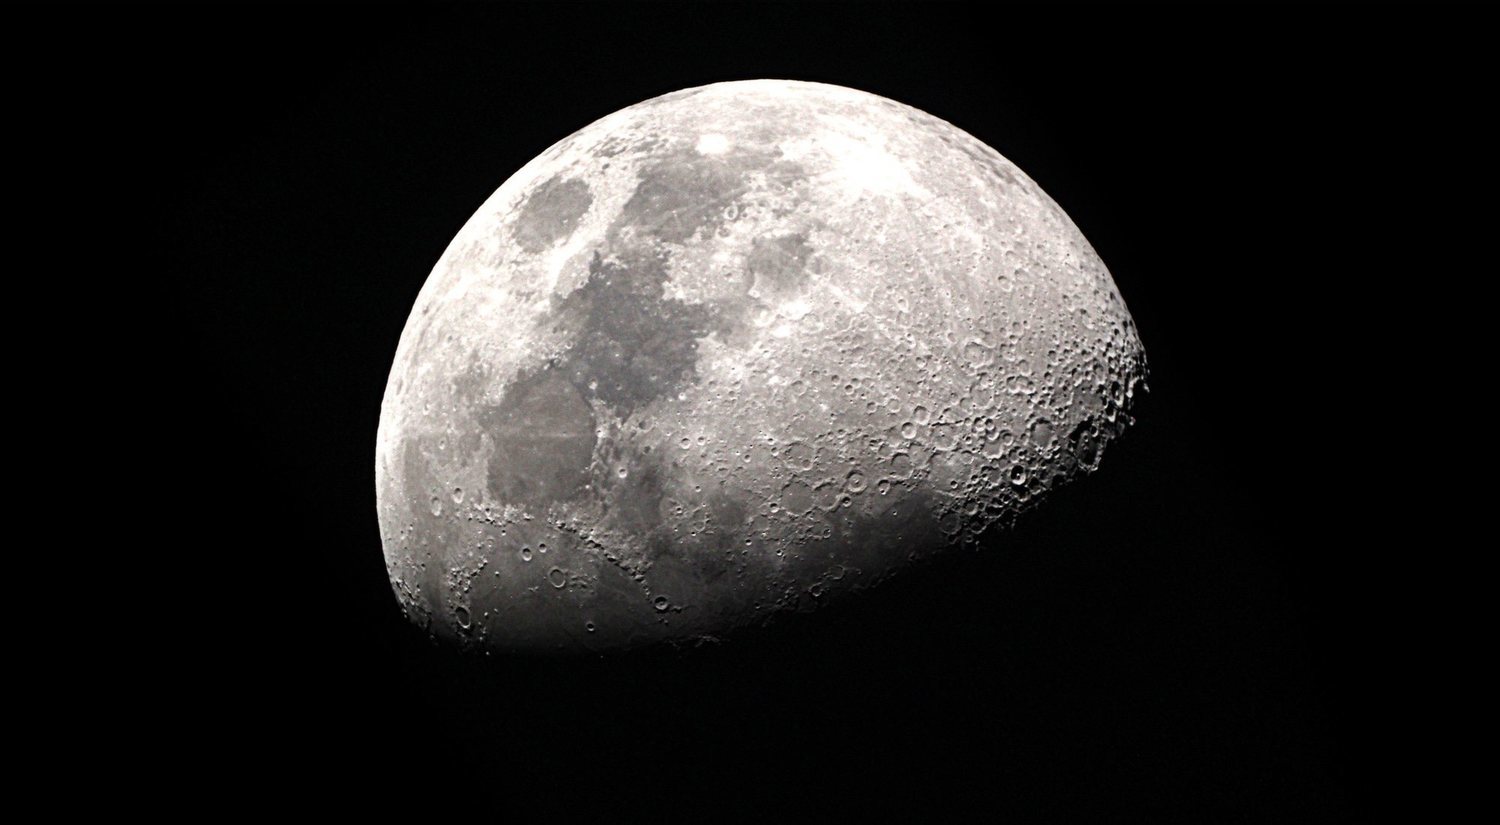 La luna: mitos y leyendas